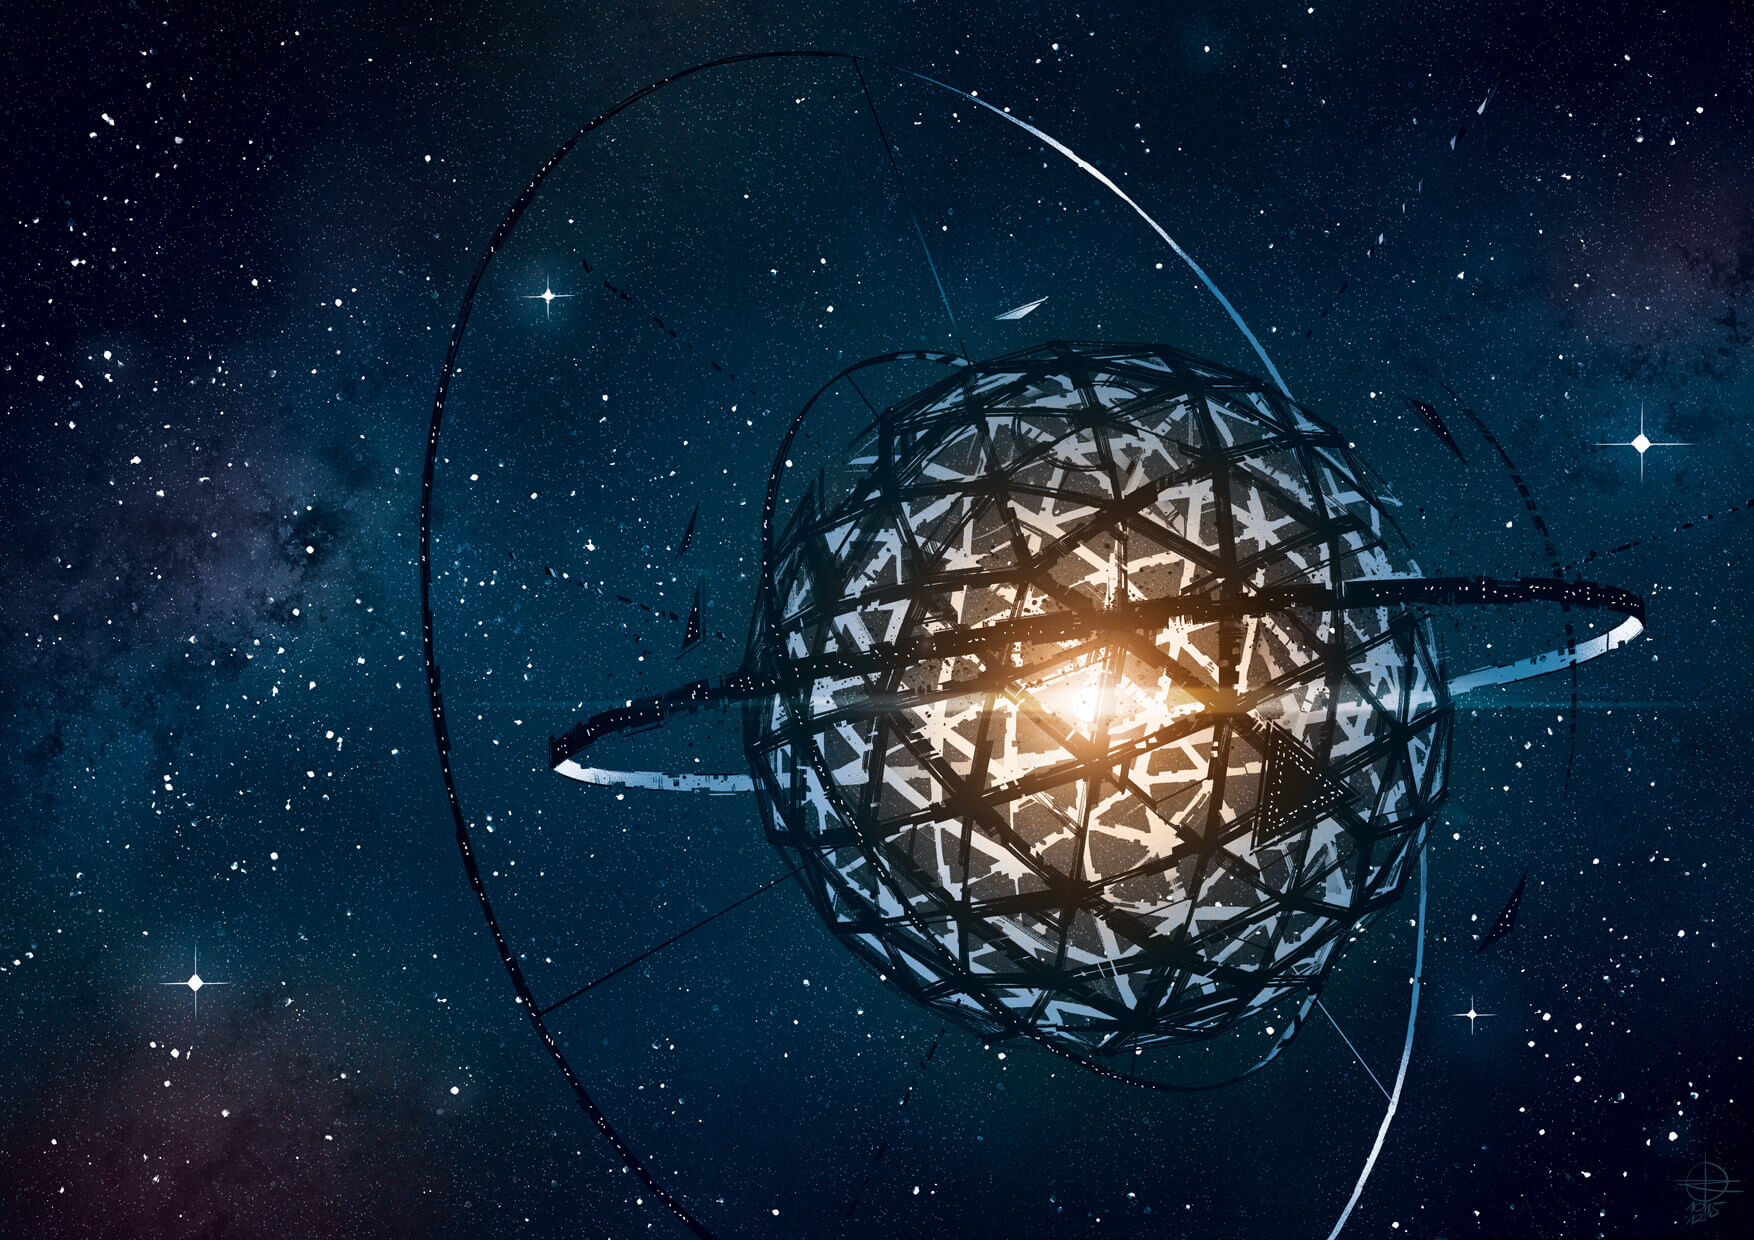 Космический искусственный интеллект. Звезда табби сфера Дайсона. Сферы Дайсона на звездах. Сфера Дайсона kic 8462852. Рой Дайсона.